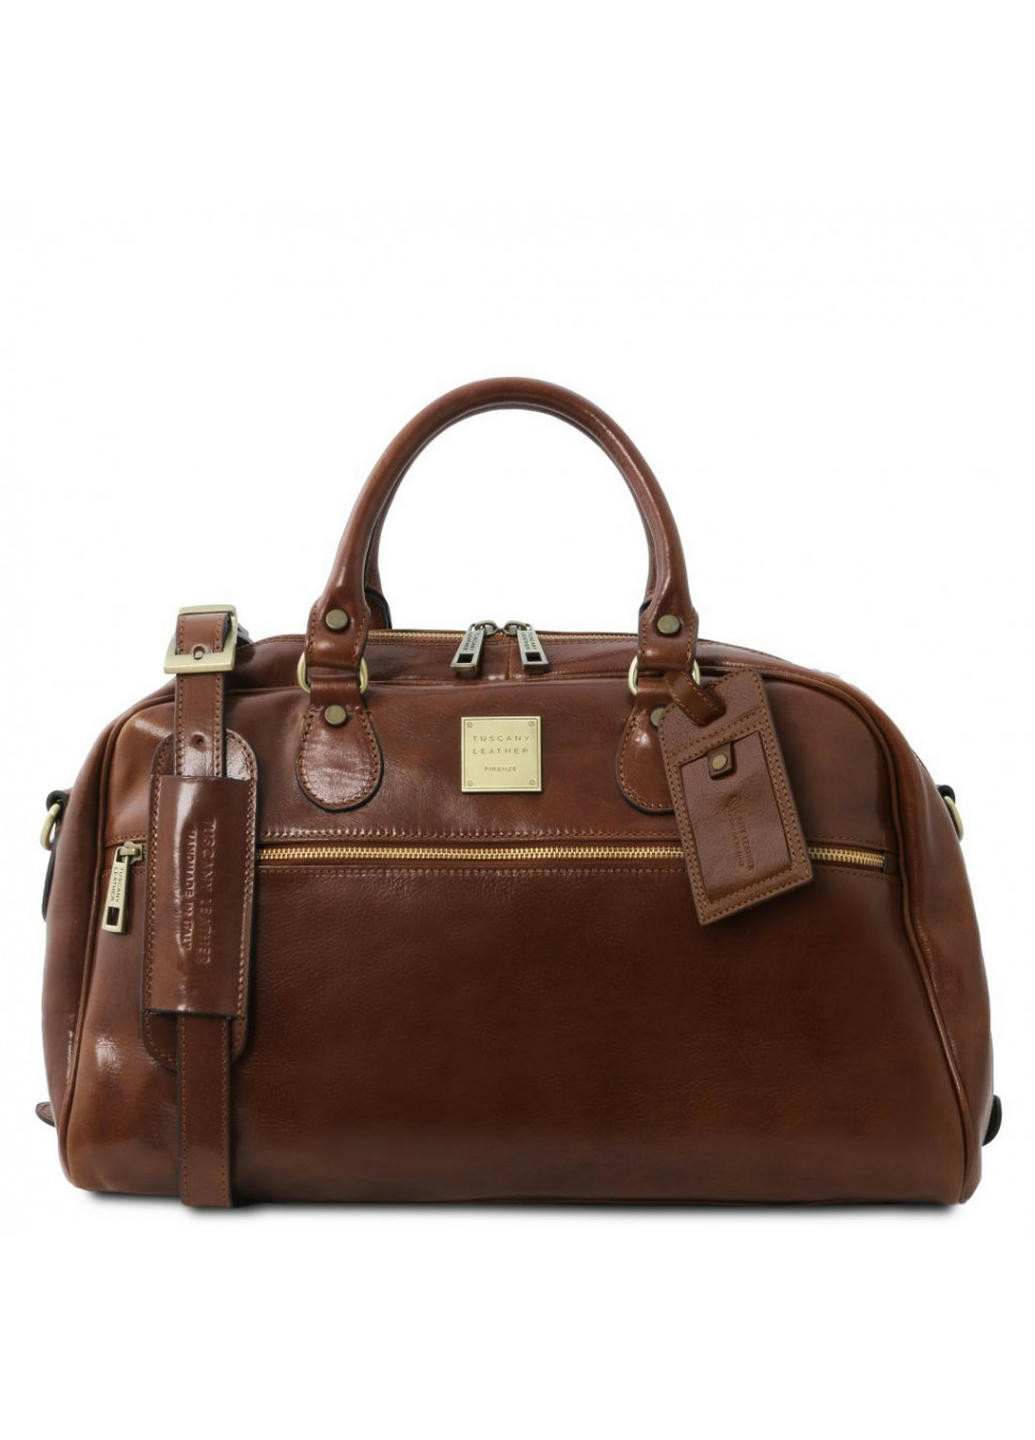 Дорожная кожаная сумка - Малый размер Tuscany TL141405 Voyager (Коричневый) Tuscany Leather (257656951)